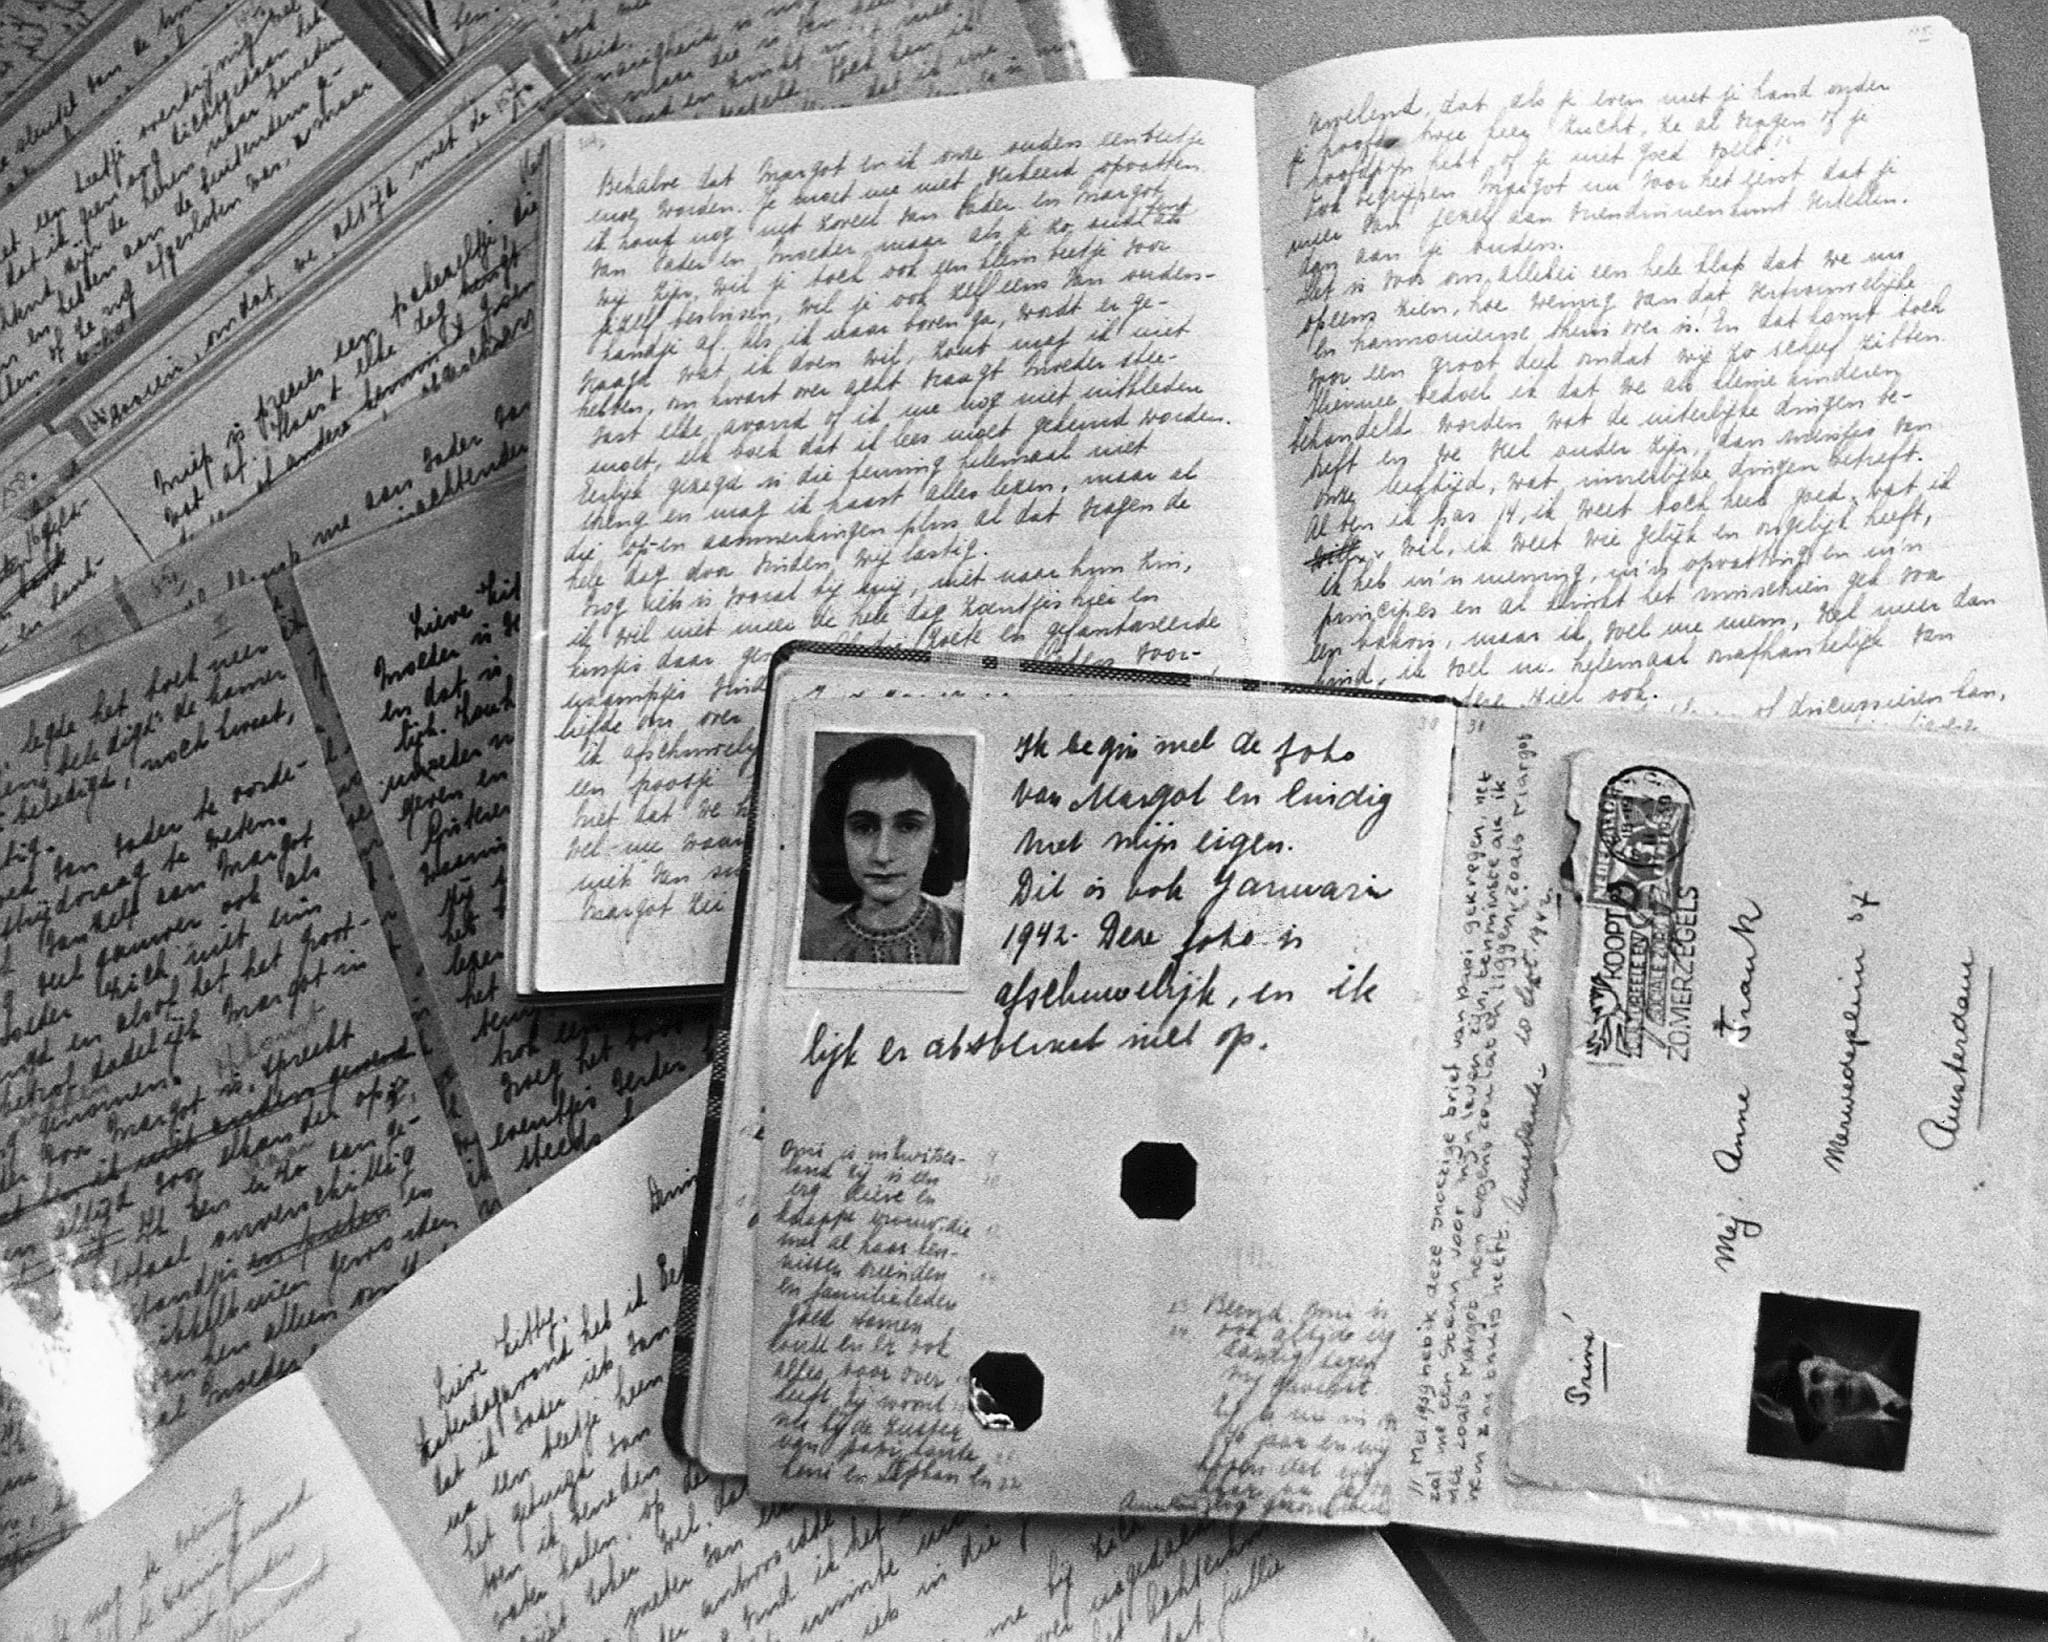 Le 25 juin 1947, paraît pour la première fois le journal d’Anne Frank avec un tirage de 3000 exemplaires.